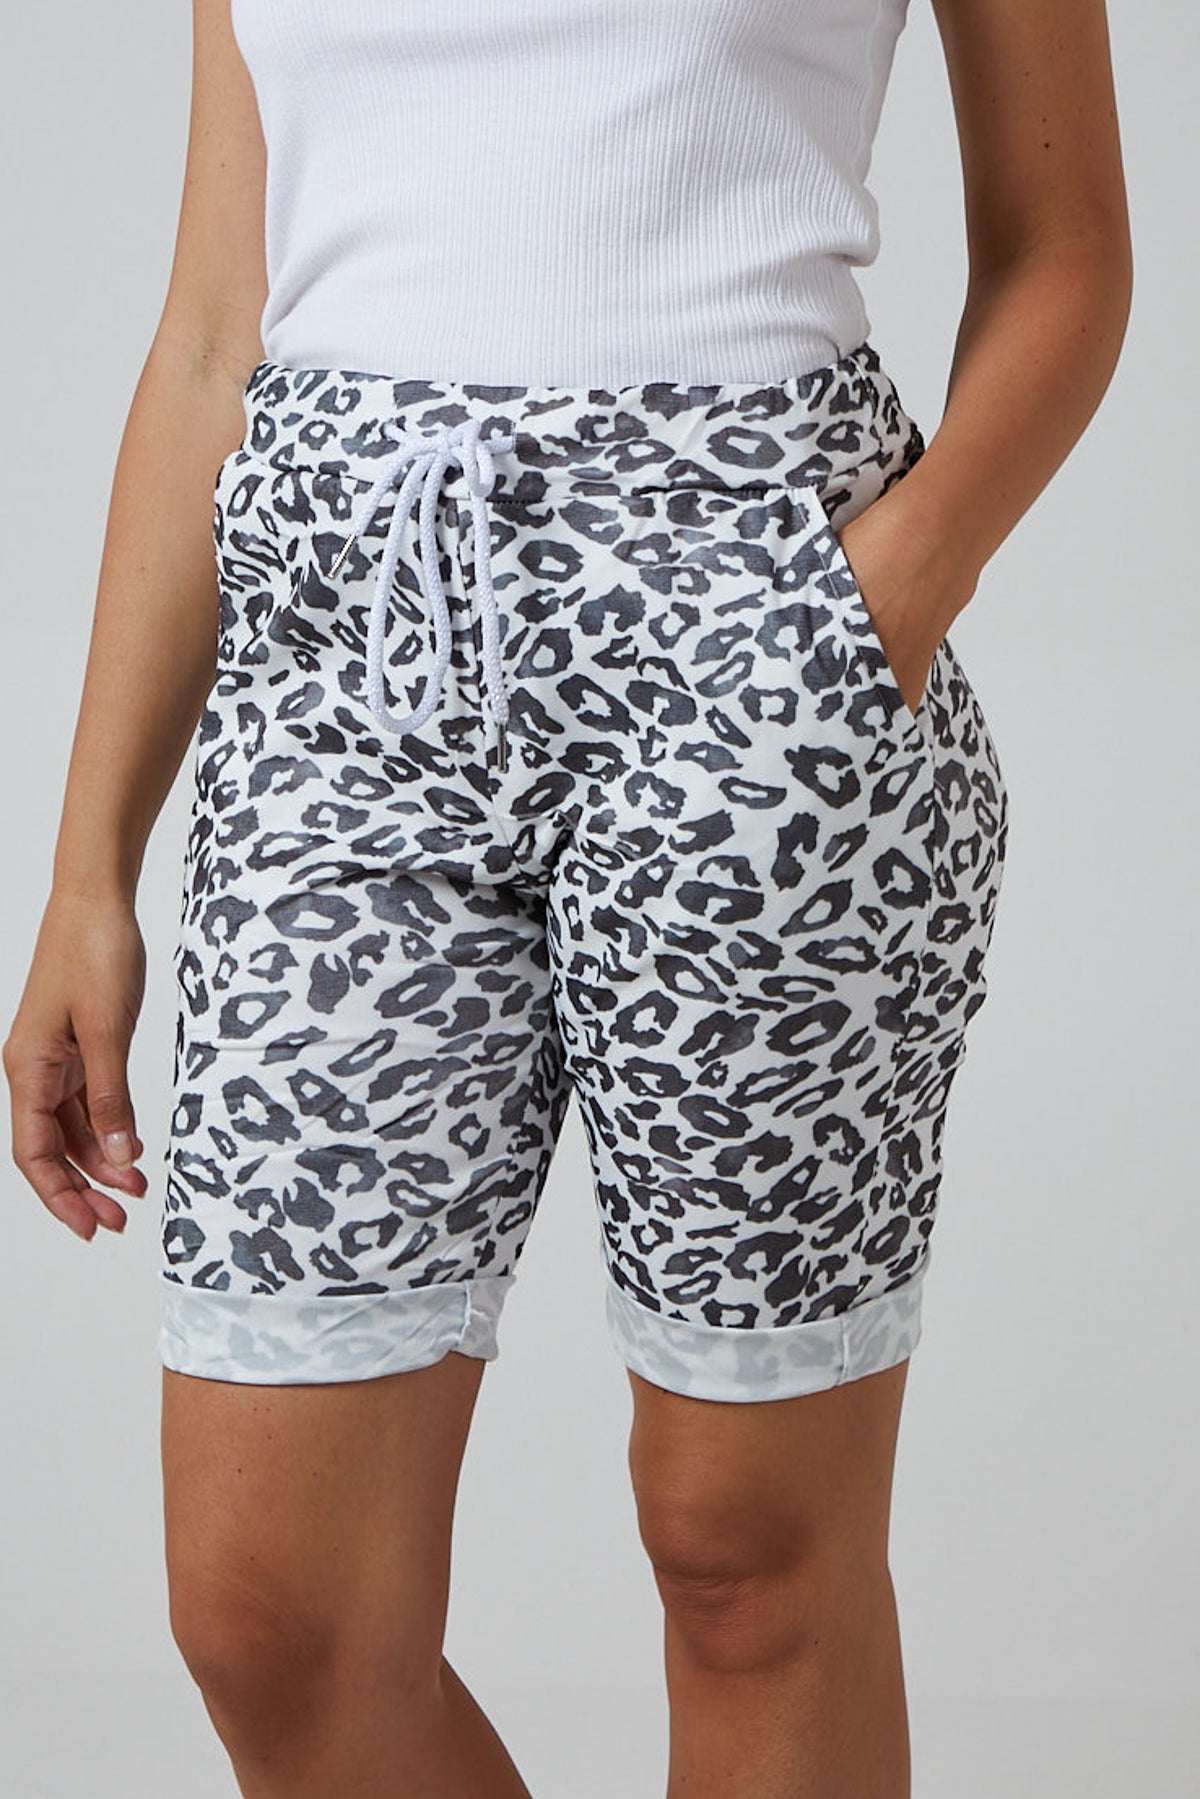 Leopard Print Super Stretch Shorts